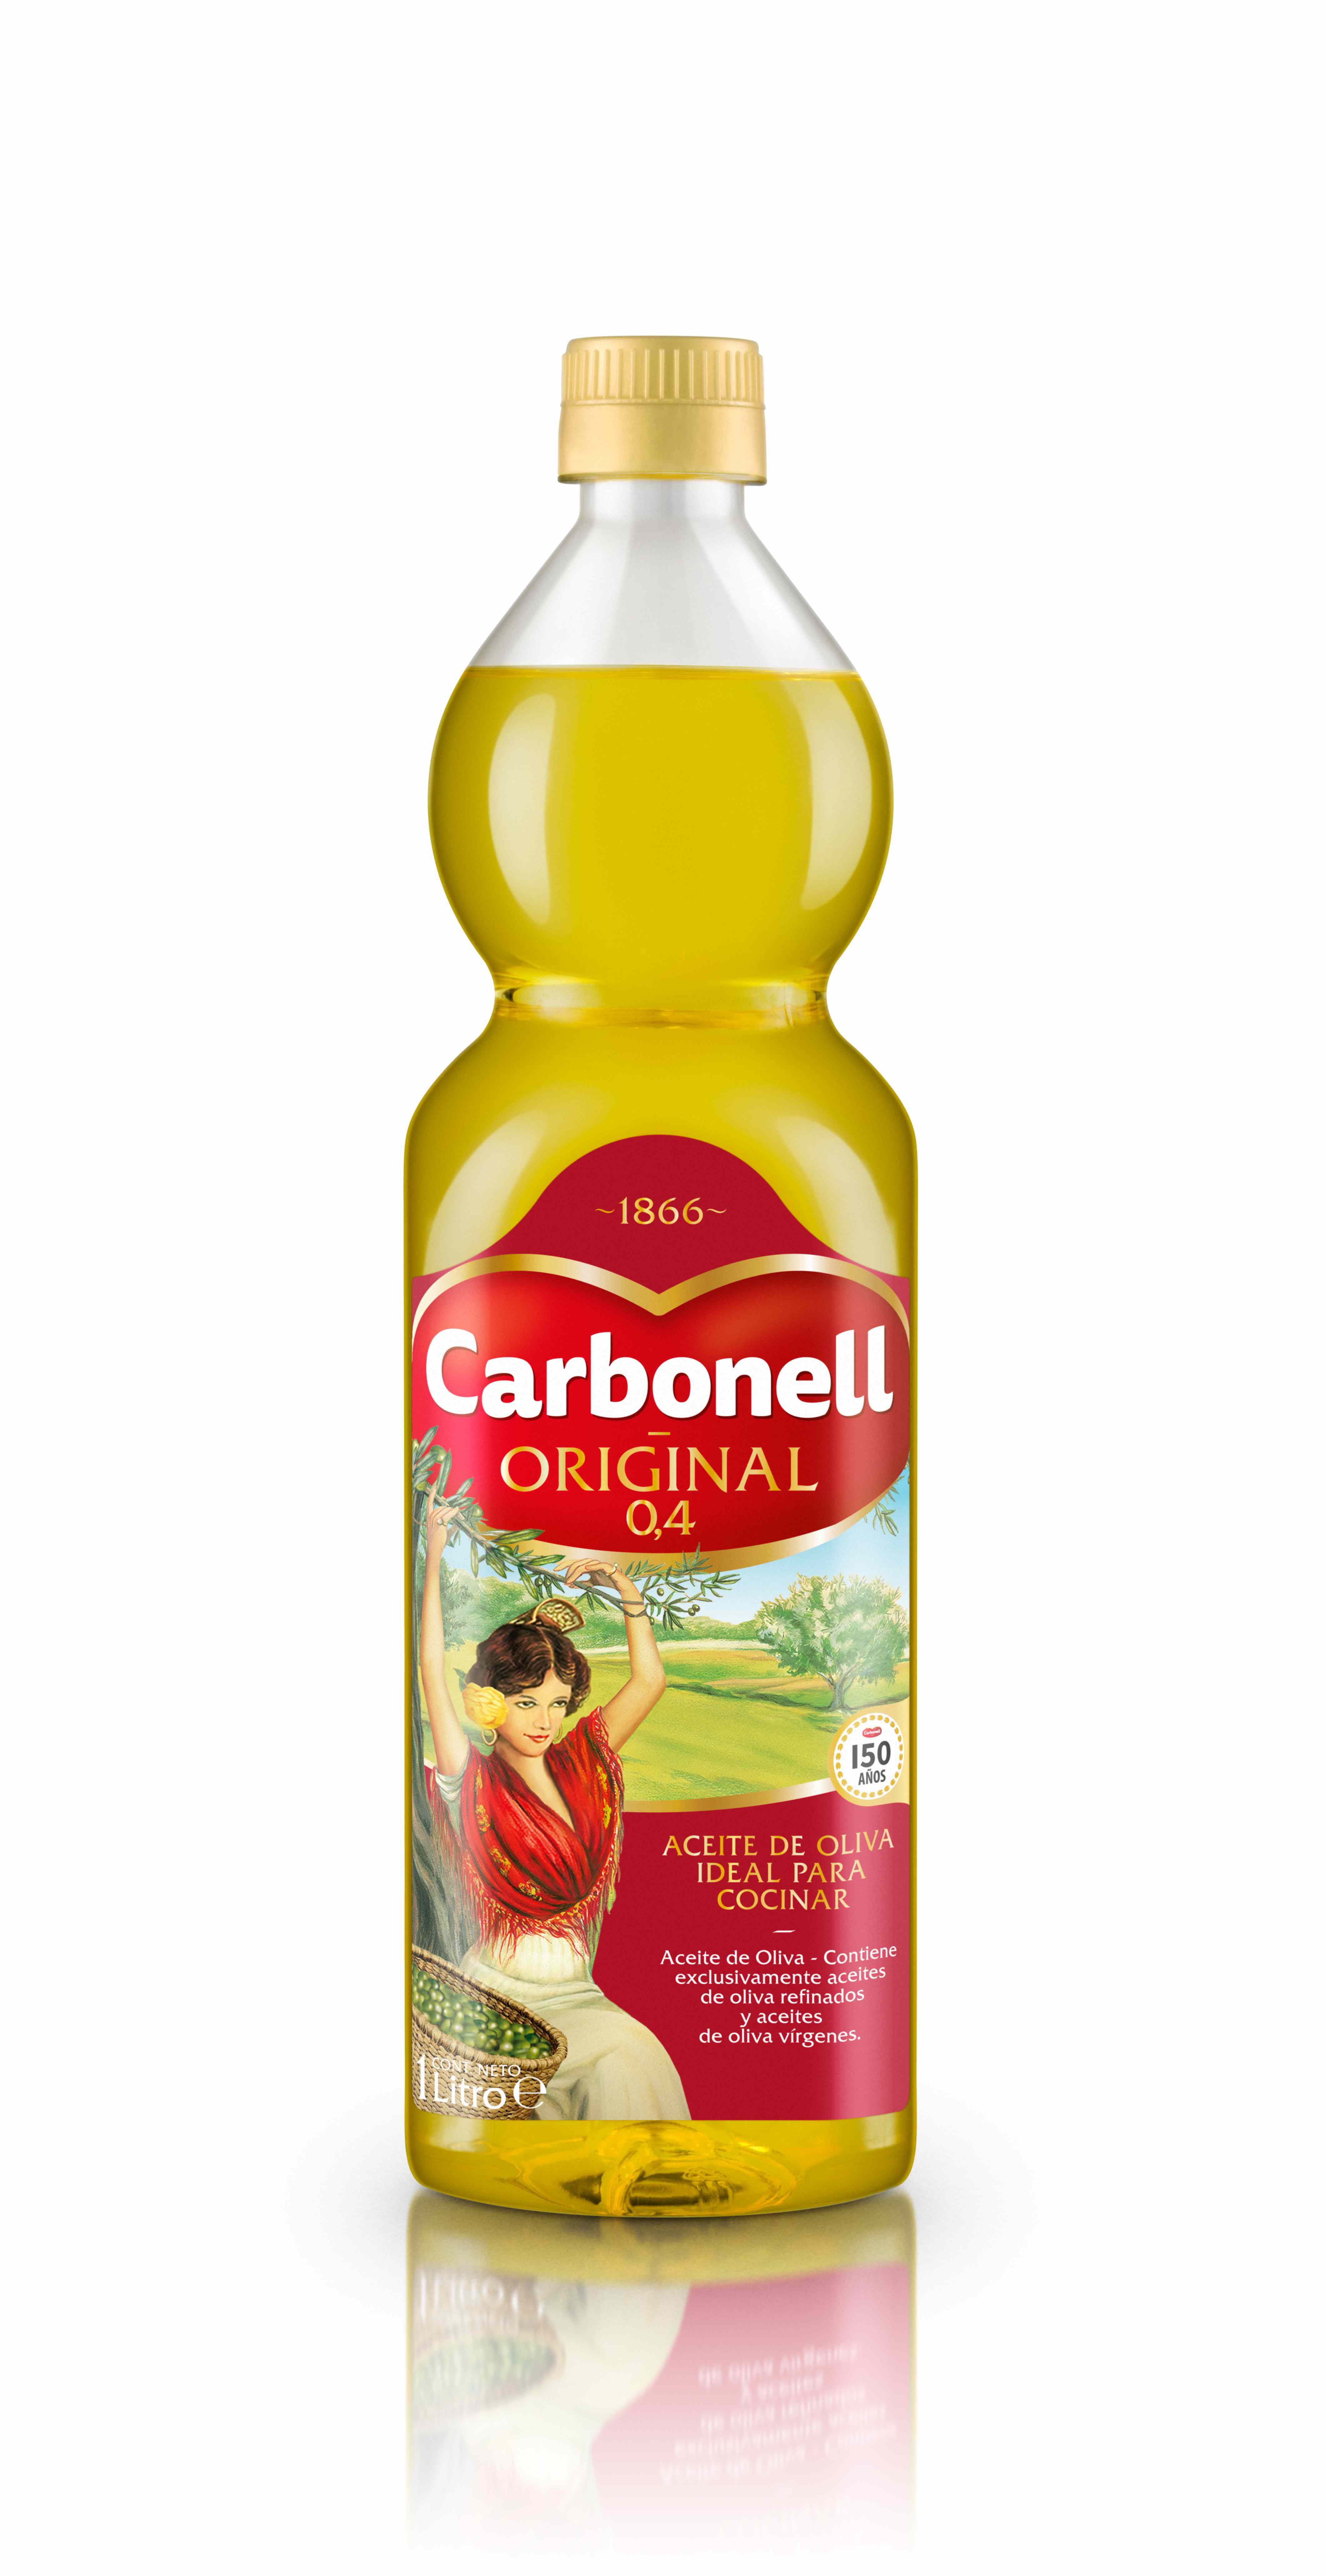 nueva-botella-carbonell-original-04